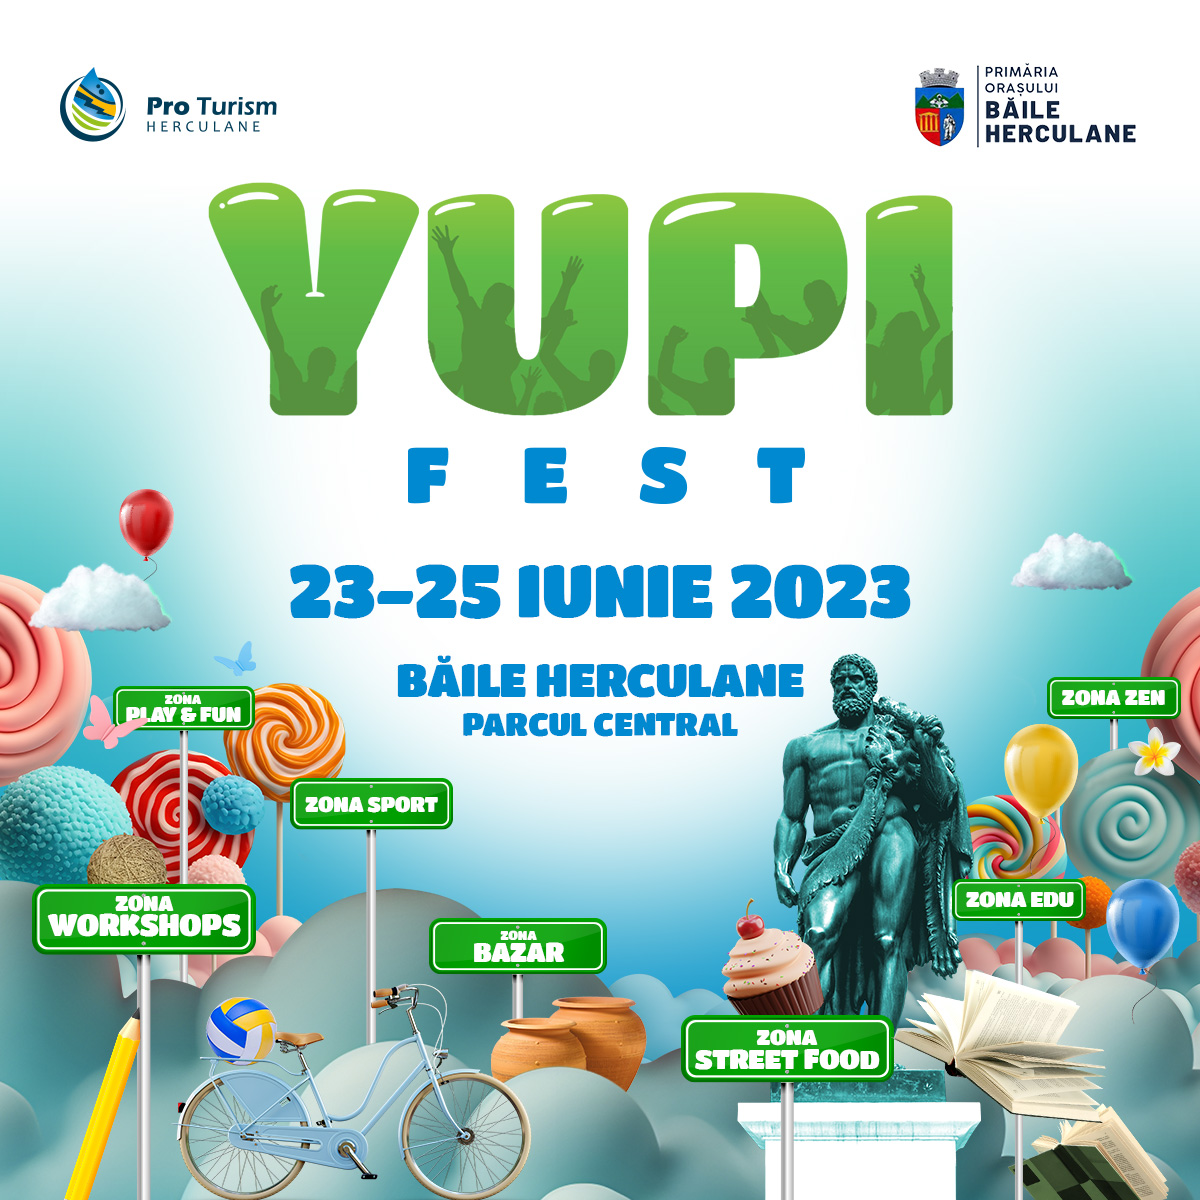 Yupi Fest - Festivalul bucuriei Dă startul primei ediții în Herculane